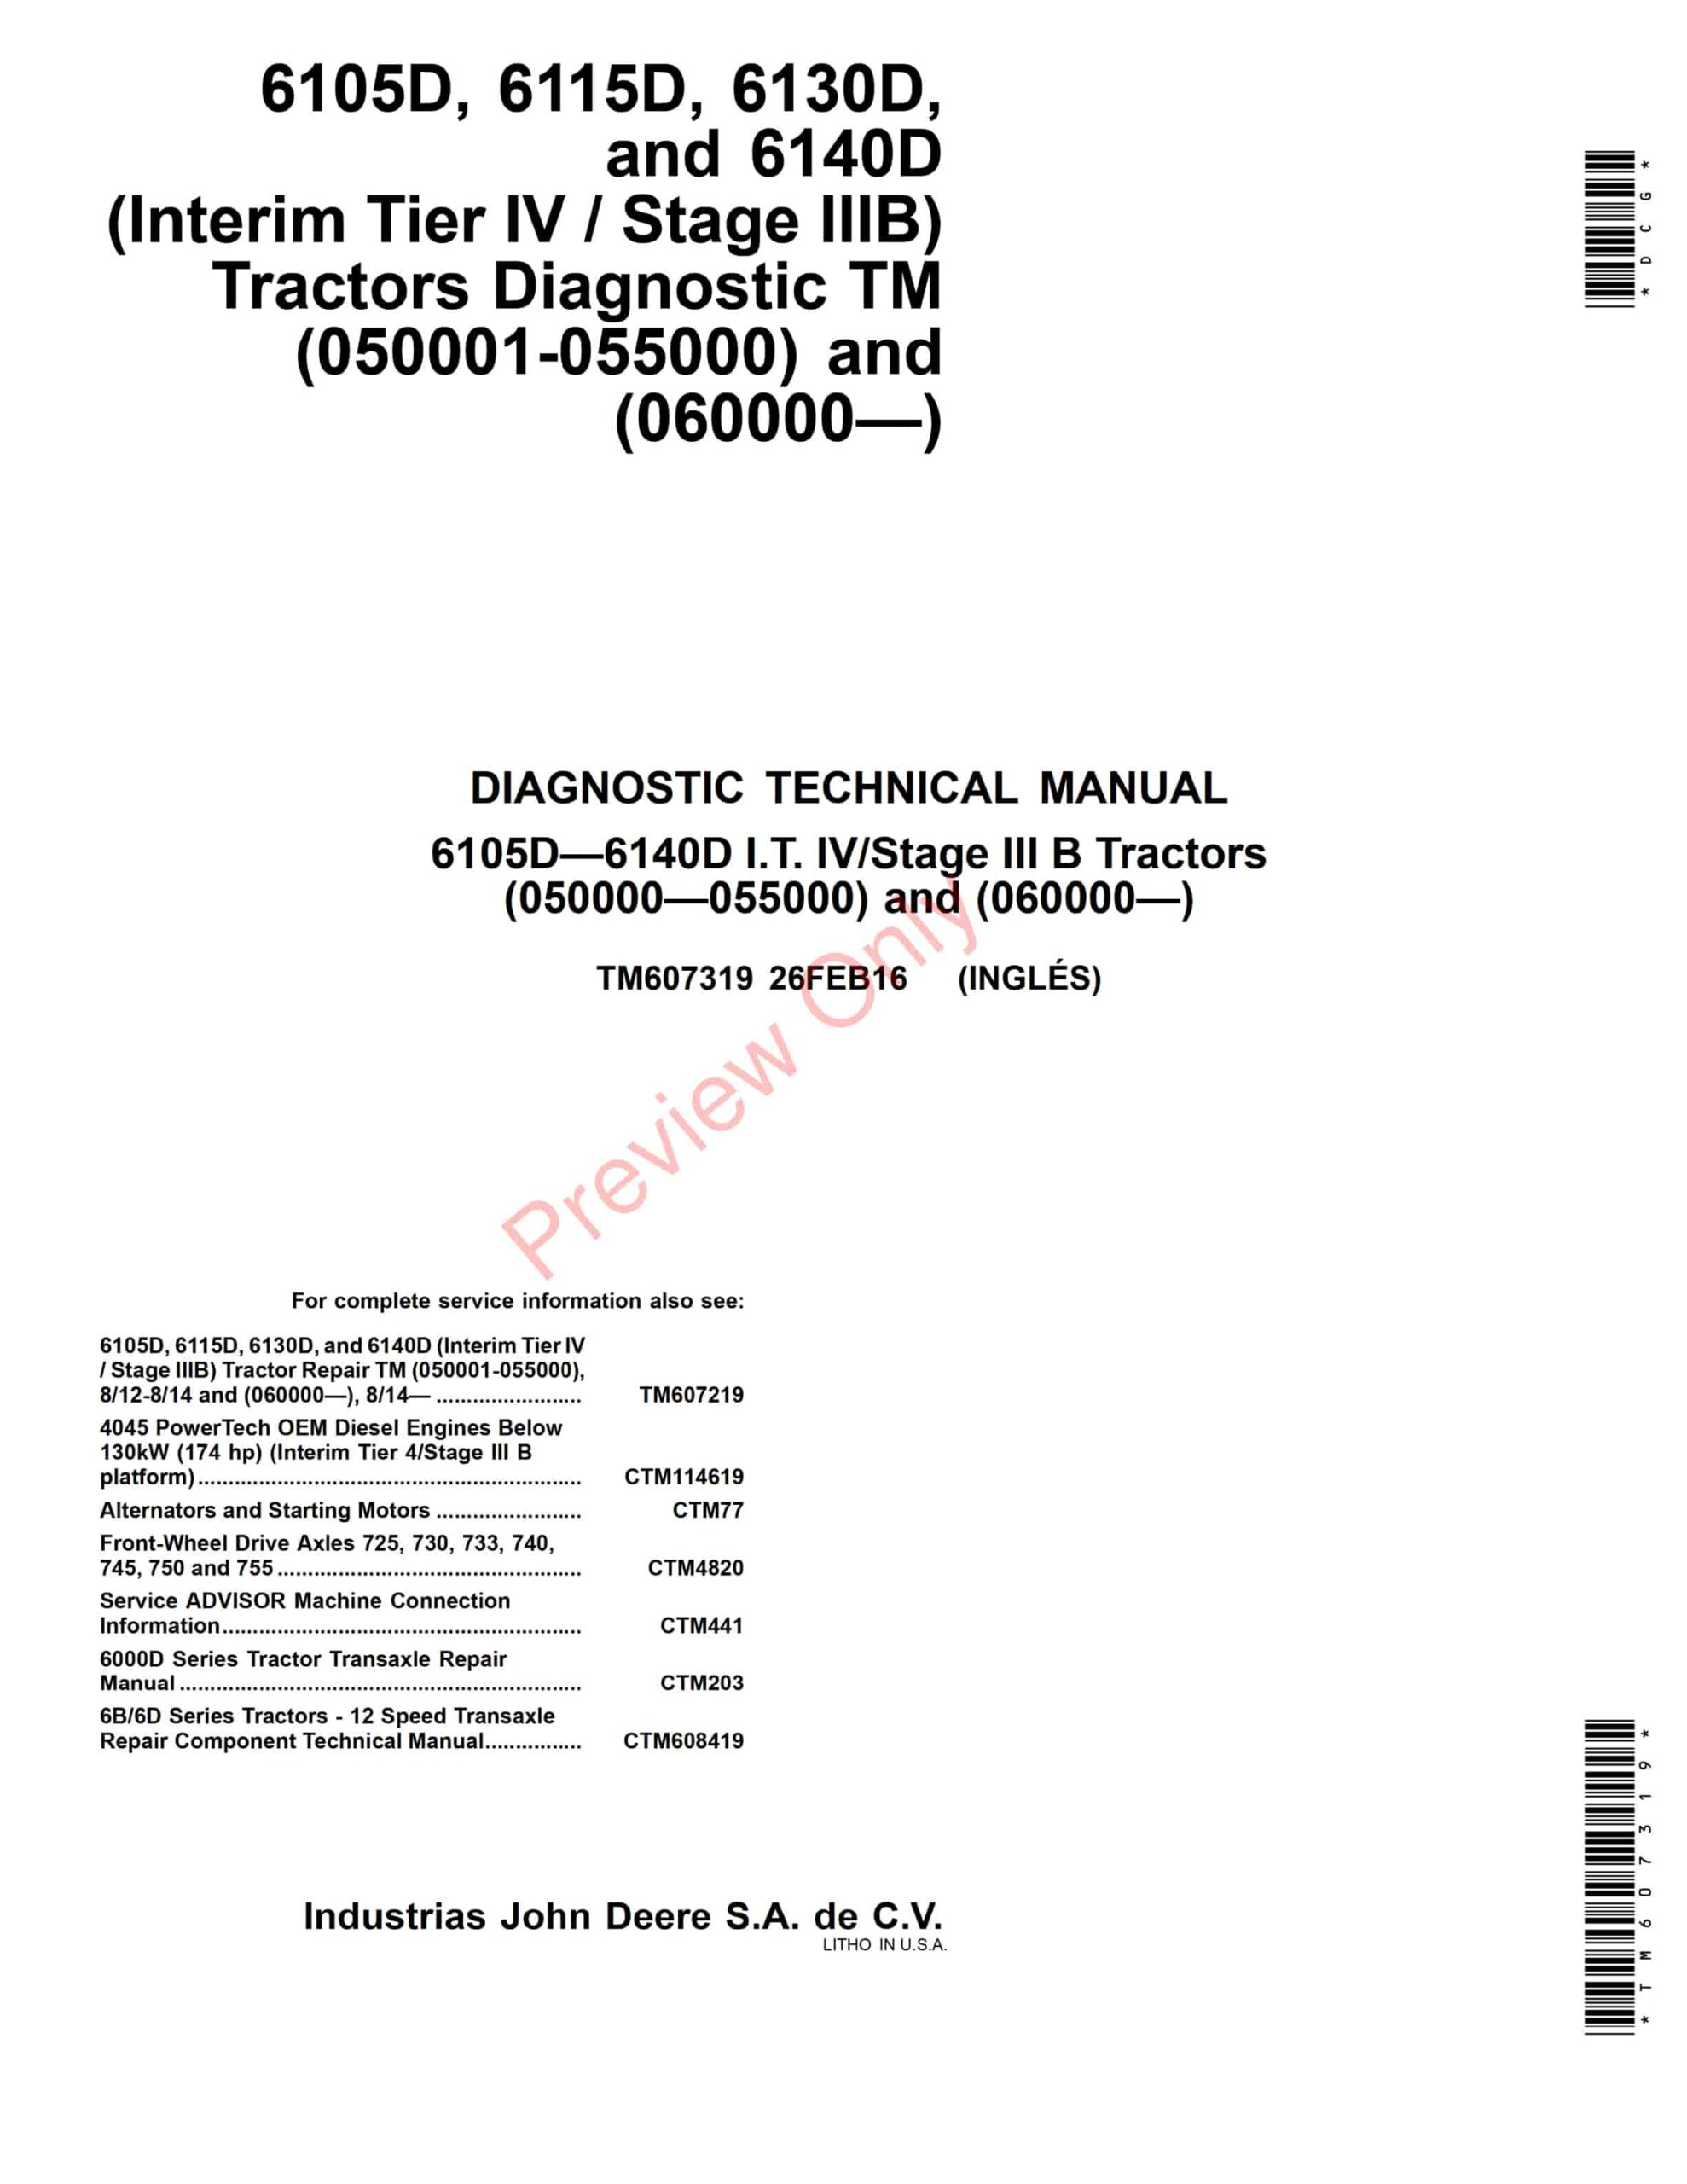 John Deere 6105D, 6115D, 6130D and 6140D (Interim Tier IV Stage IIIB) Tractors Repair Component Technical Manual TM607319 26FEB16-1